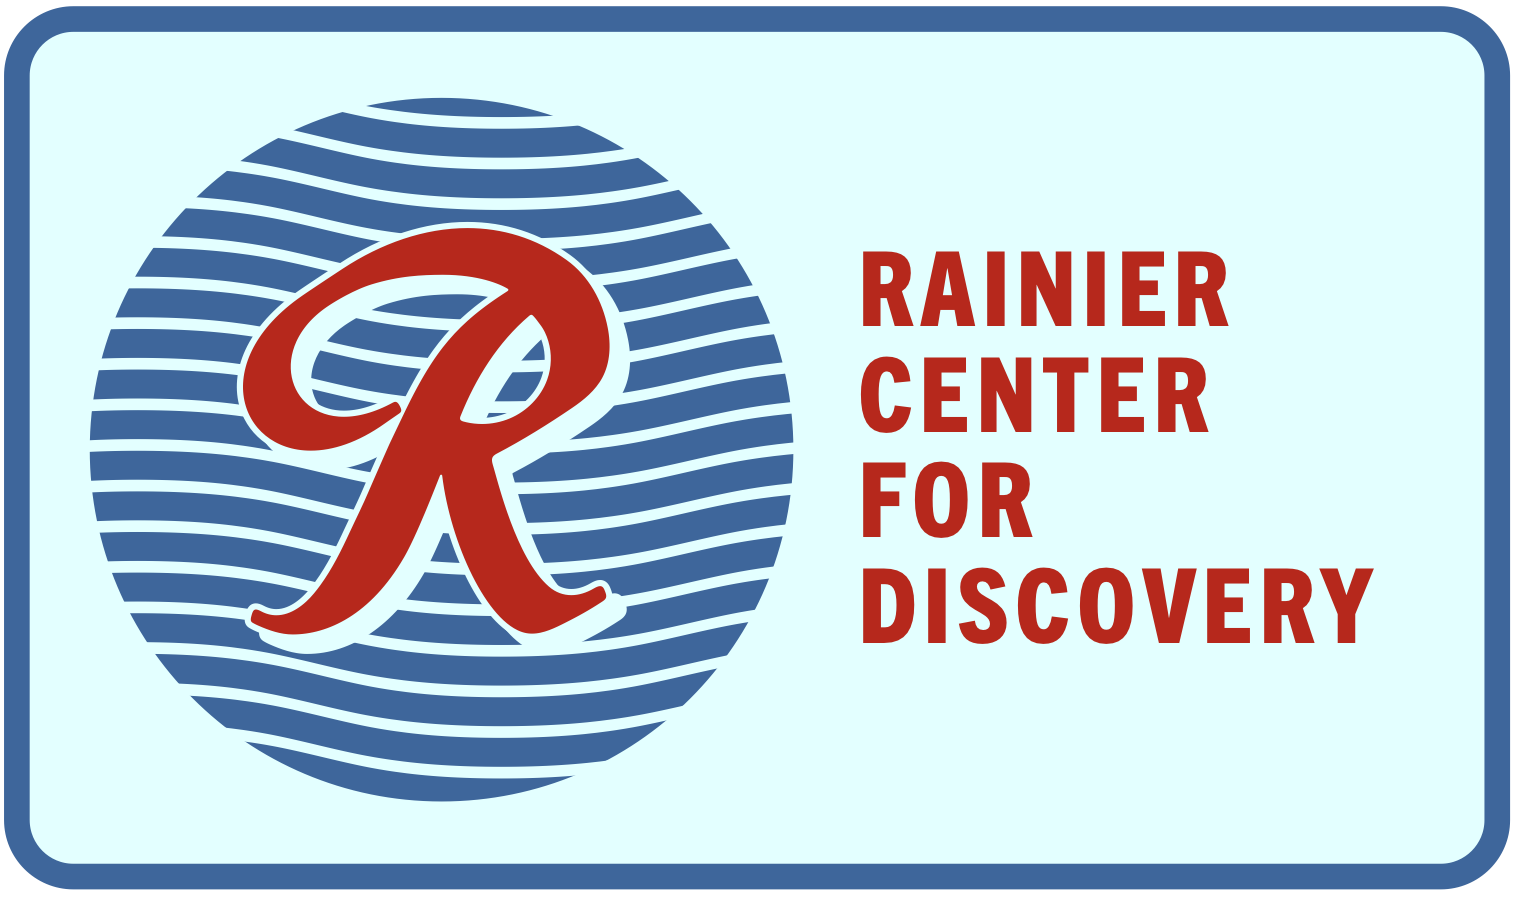 rainier center for discovery image